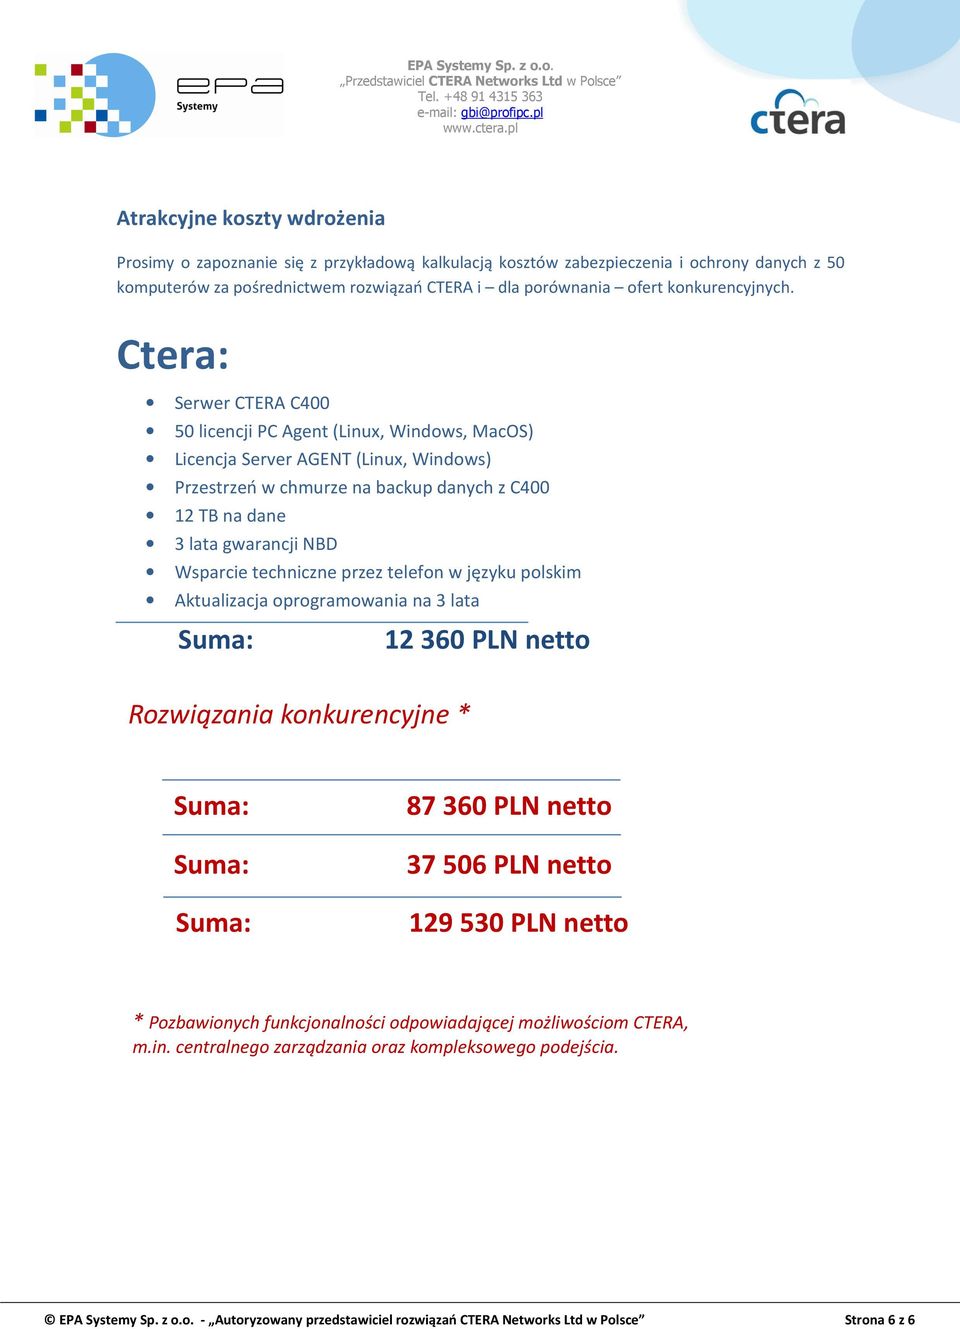 Ctera: Serwer CTERA C400 50 licencji PC Agent (Linux, Windows, MacOS) Licencja Server AGENT (Linux, Windows) Przestrzeń w chmurze na backup danych z C400 12 TB na dane 3 lata gwarancji NBD Wsparcie